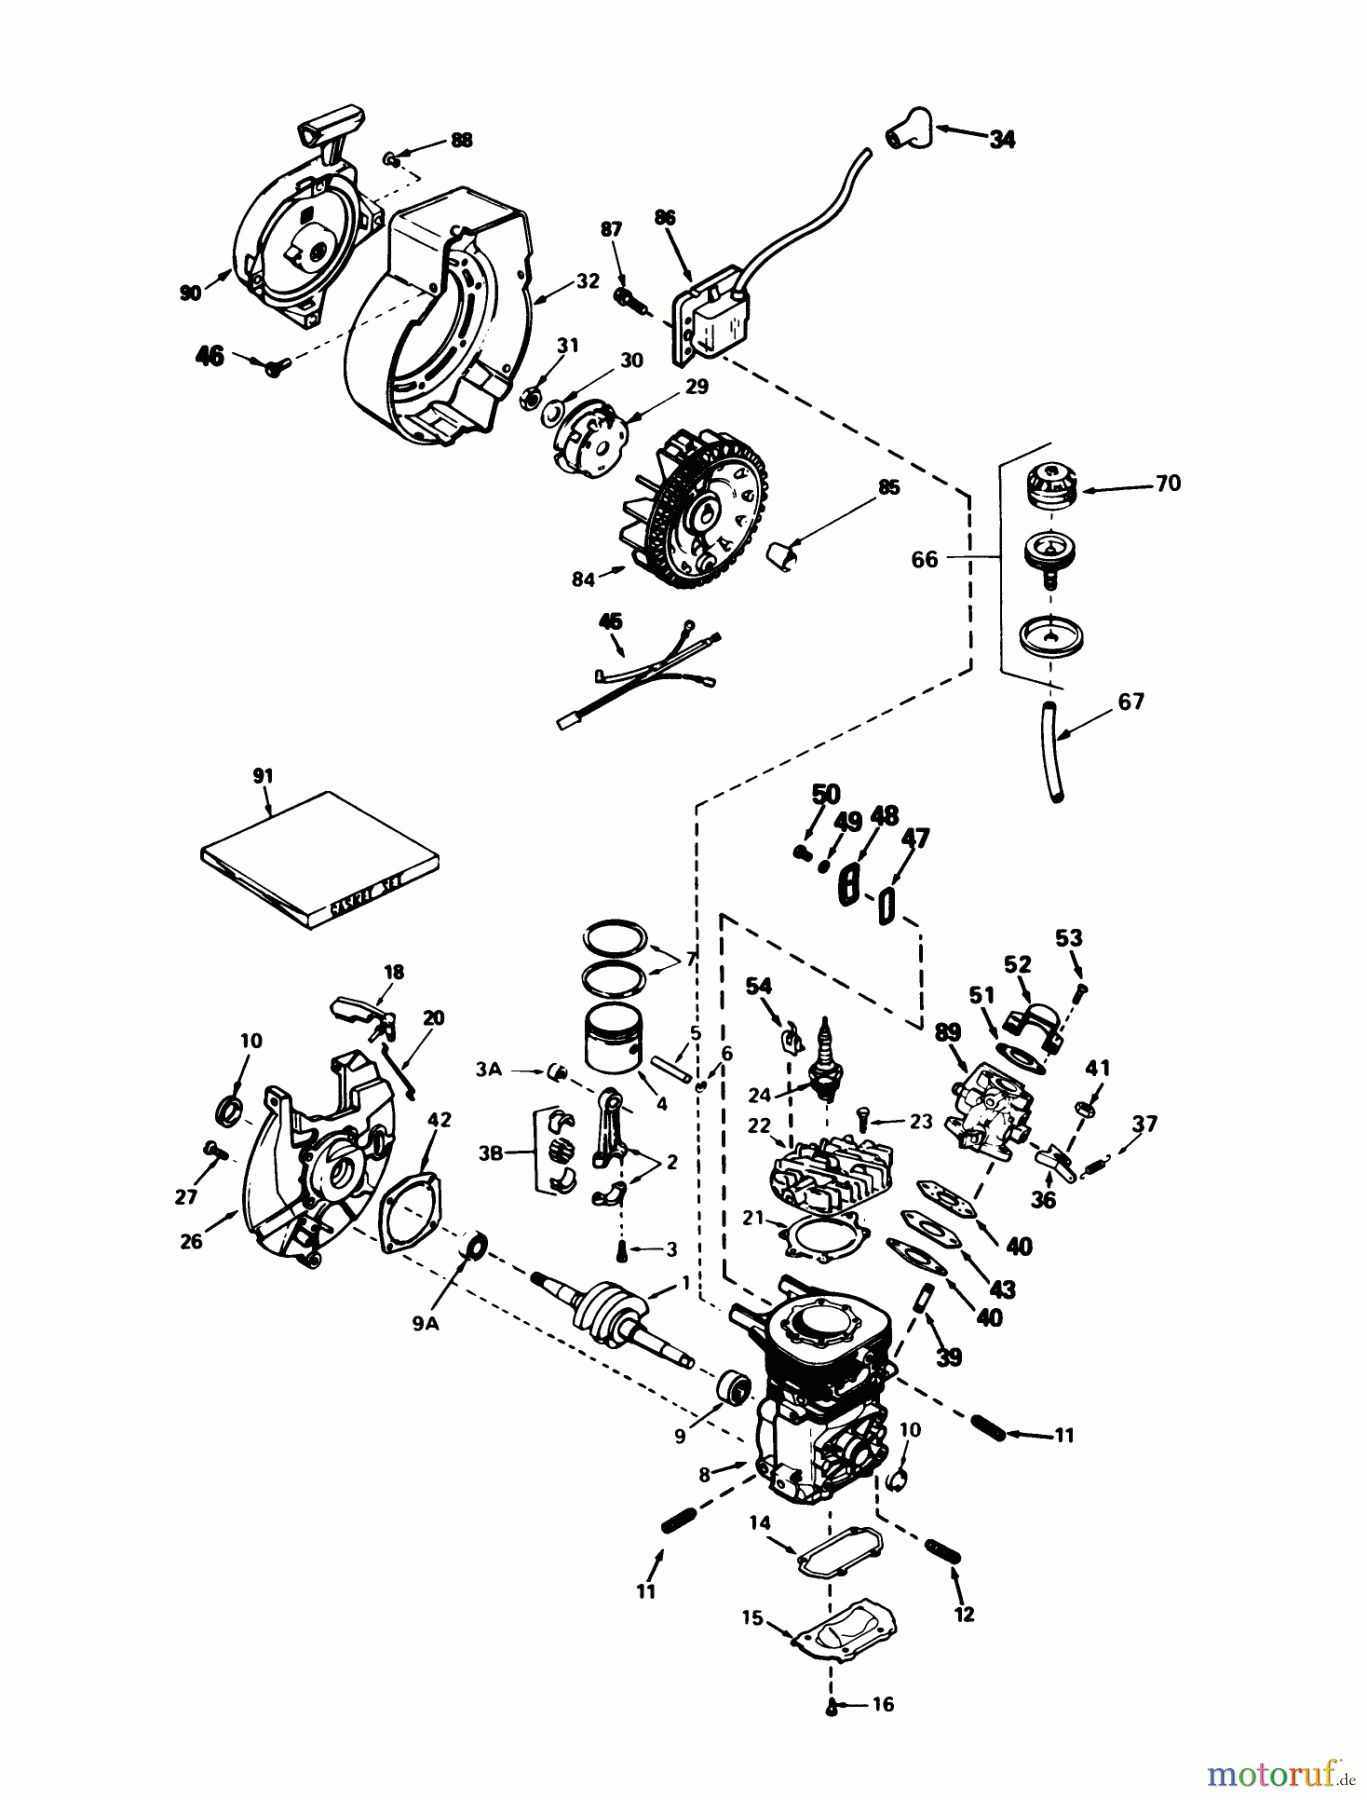  Toro Neu Snow Blowers/Snow Throwers Seite 1 38162C (S-620) - Toro S-620 Snowthrower, 1985 (5000001-5999999) ENGINE TECUMSEH MODEL AH-600 TYPE 1623-A